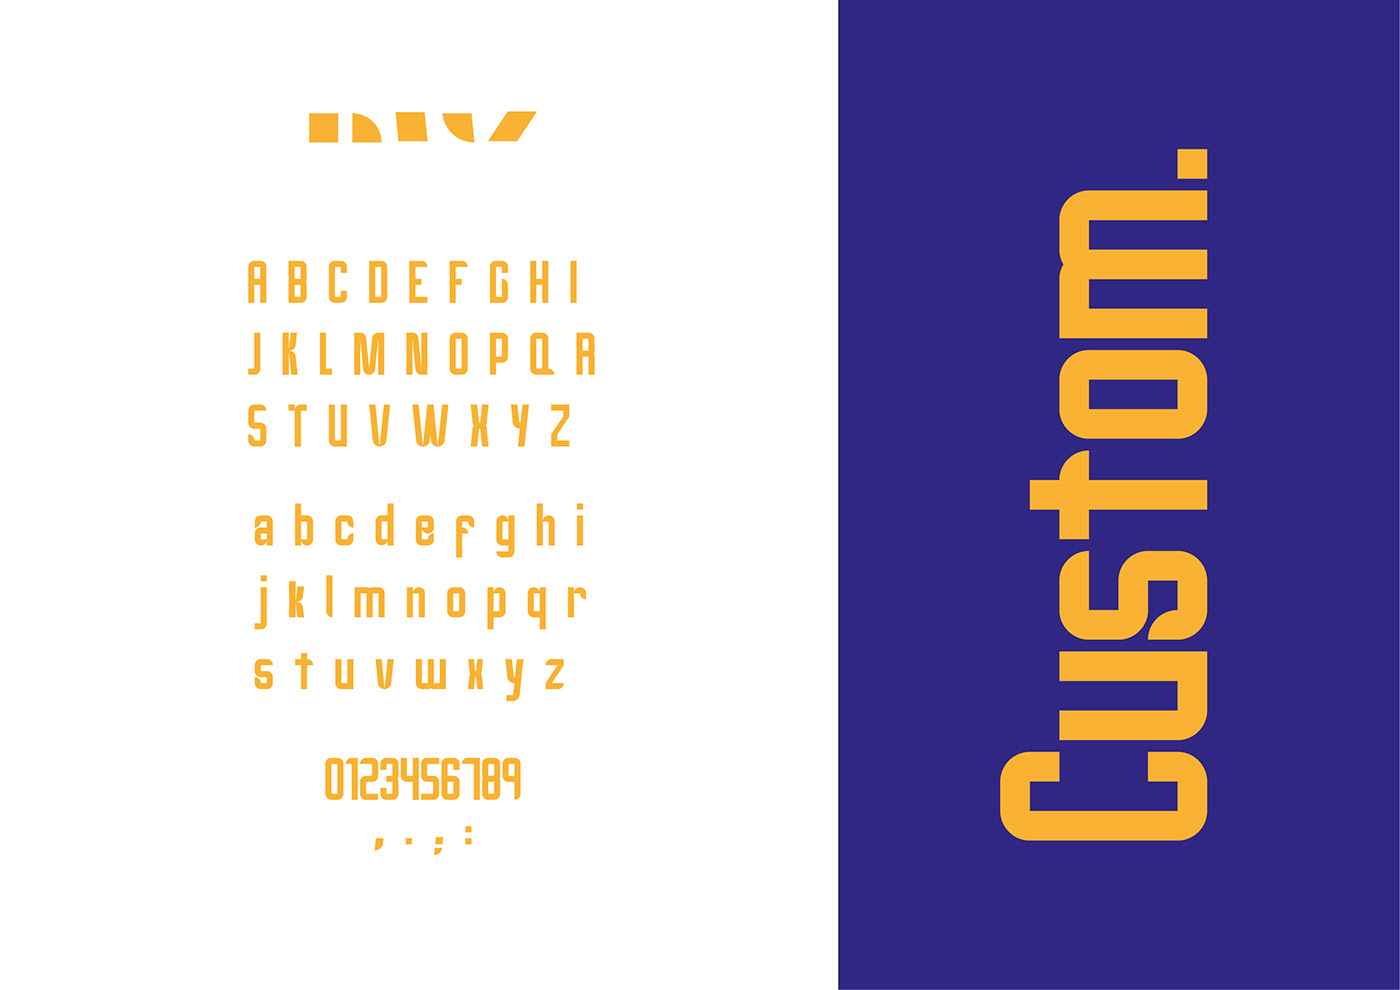 #Design #modulardesign #Tipografia #tipography 